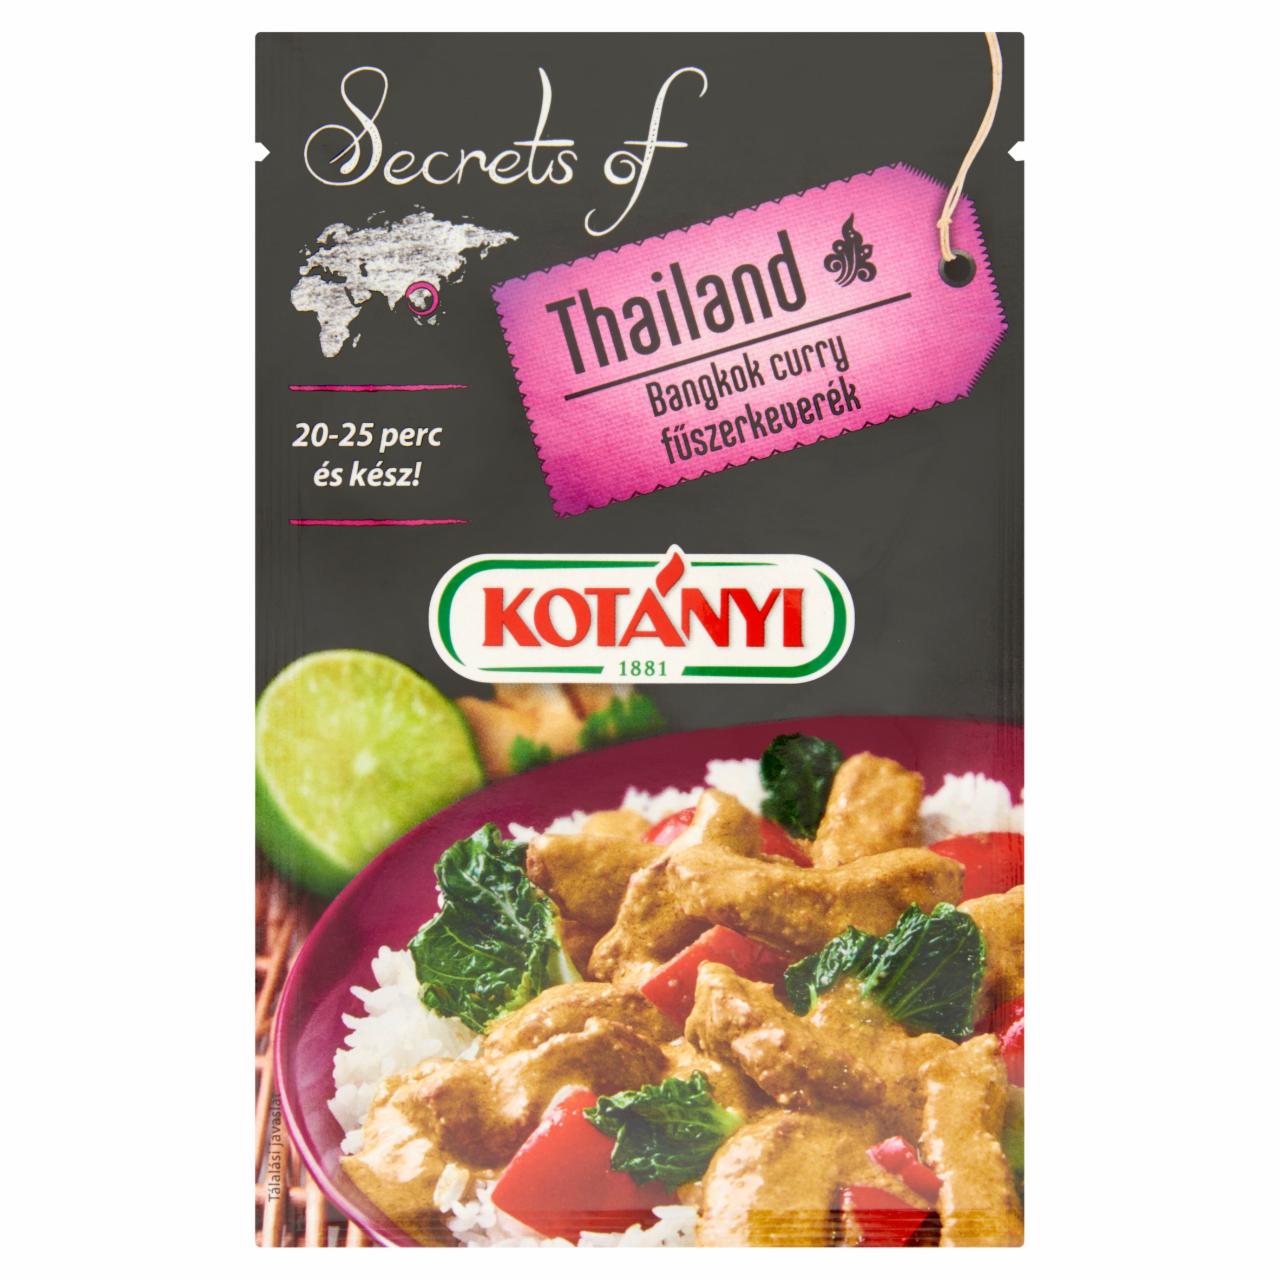 Képek - Kotányi Secrets of Thailand Bangkok curry fűszerkeverék 20 g